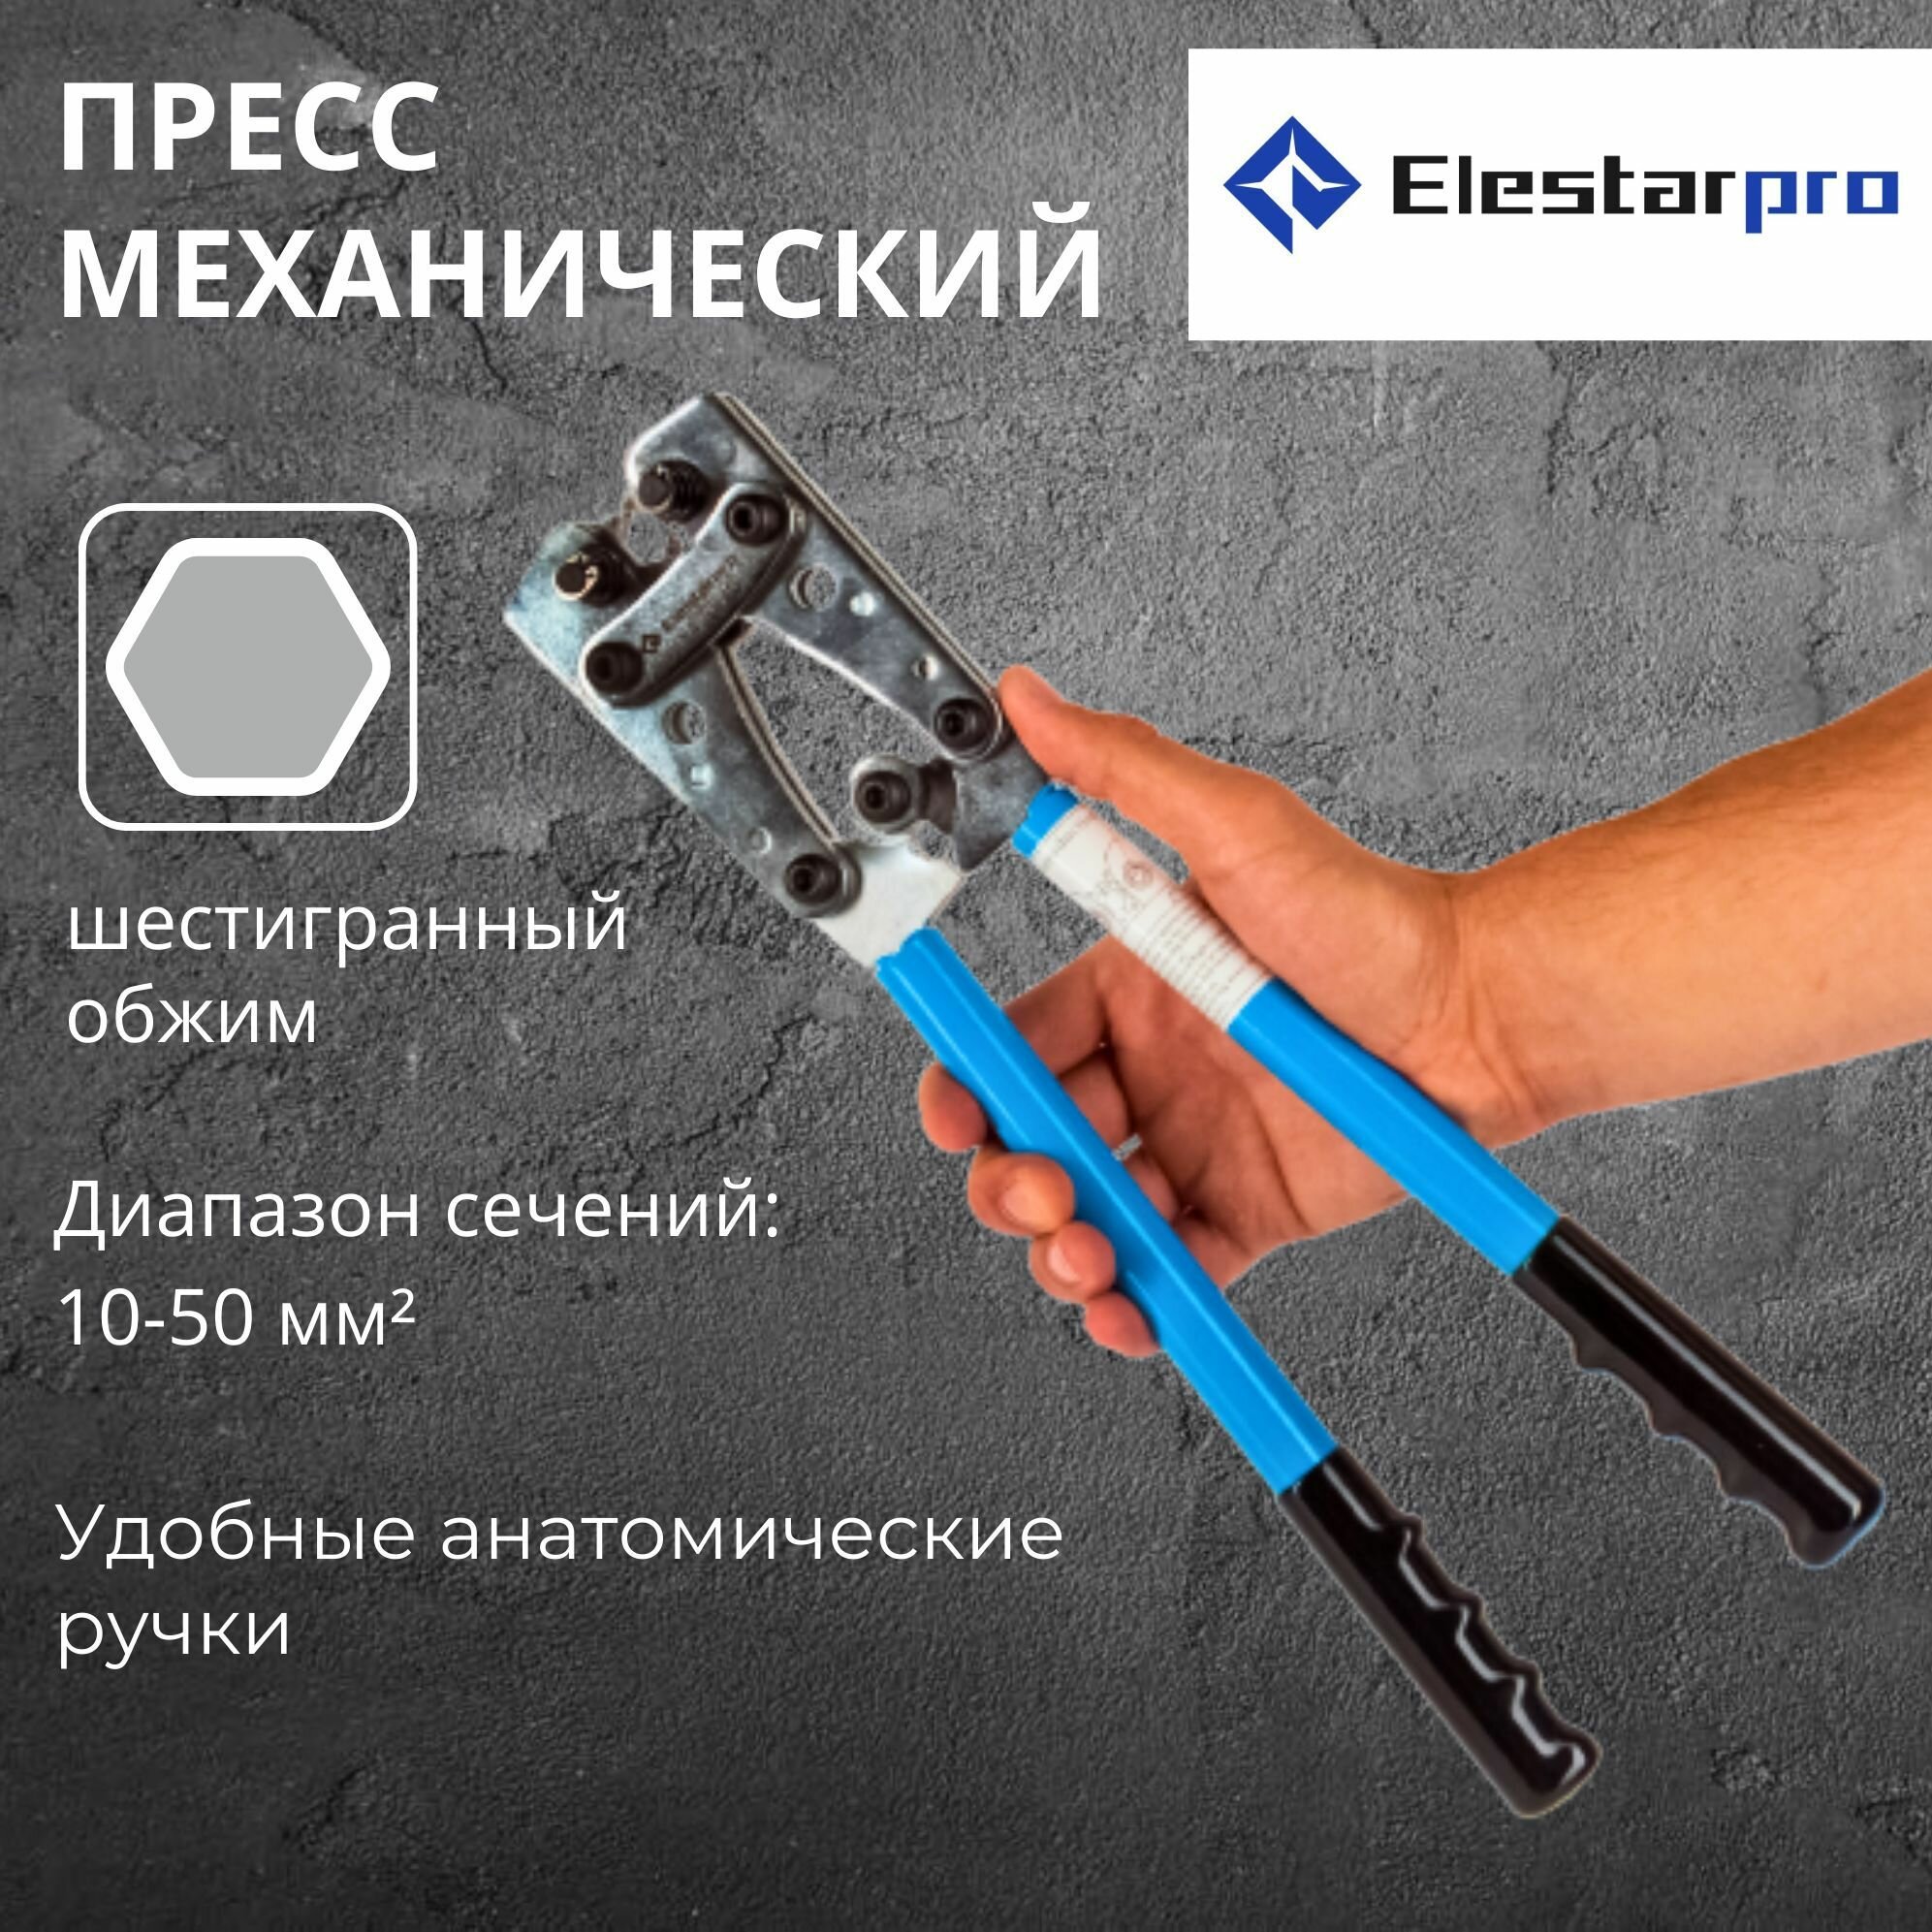 Пресс-клещи Elestarpro гексагональные для медных неизолированных наконечников ПКГ-50 6-50 кв. мм